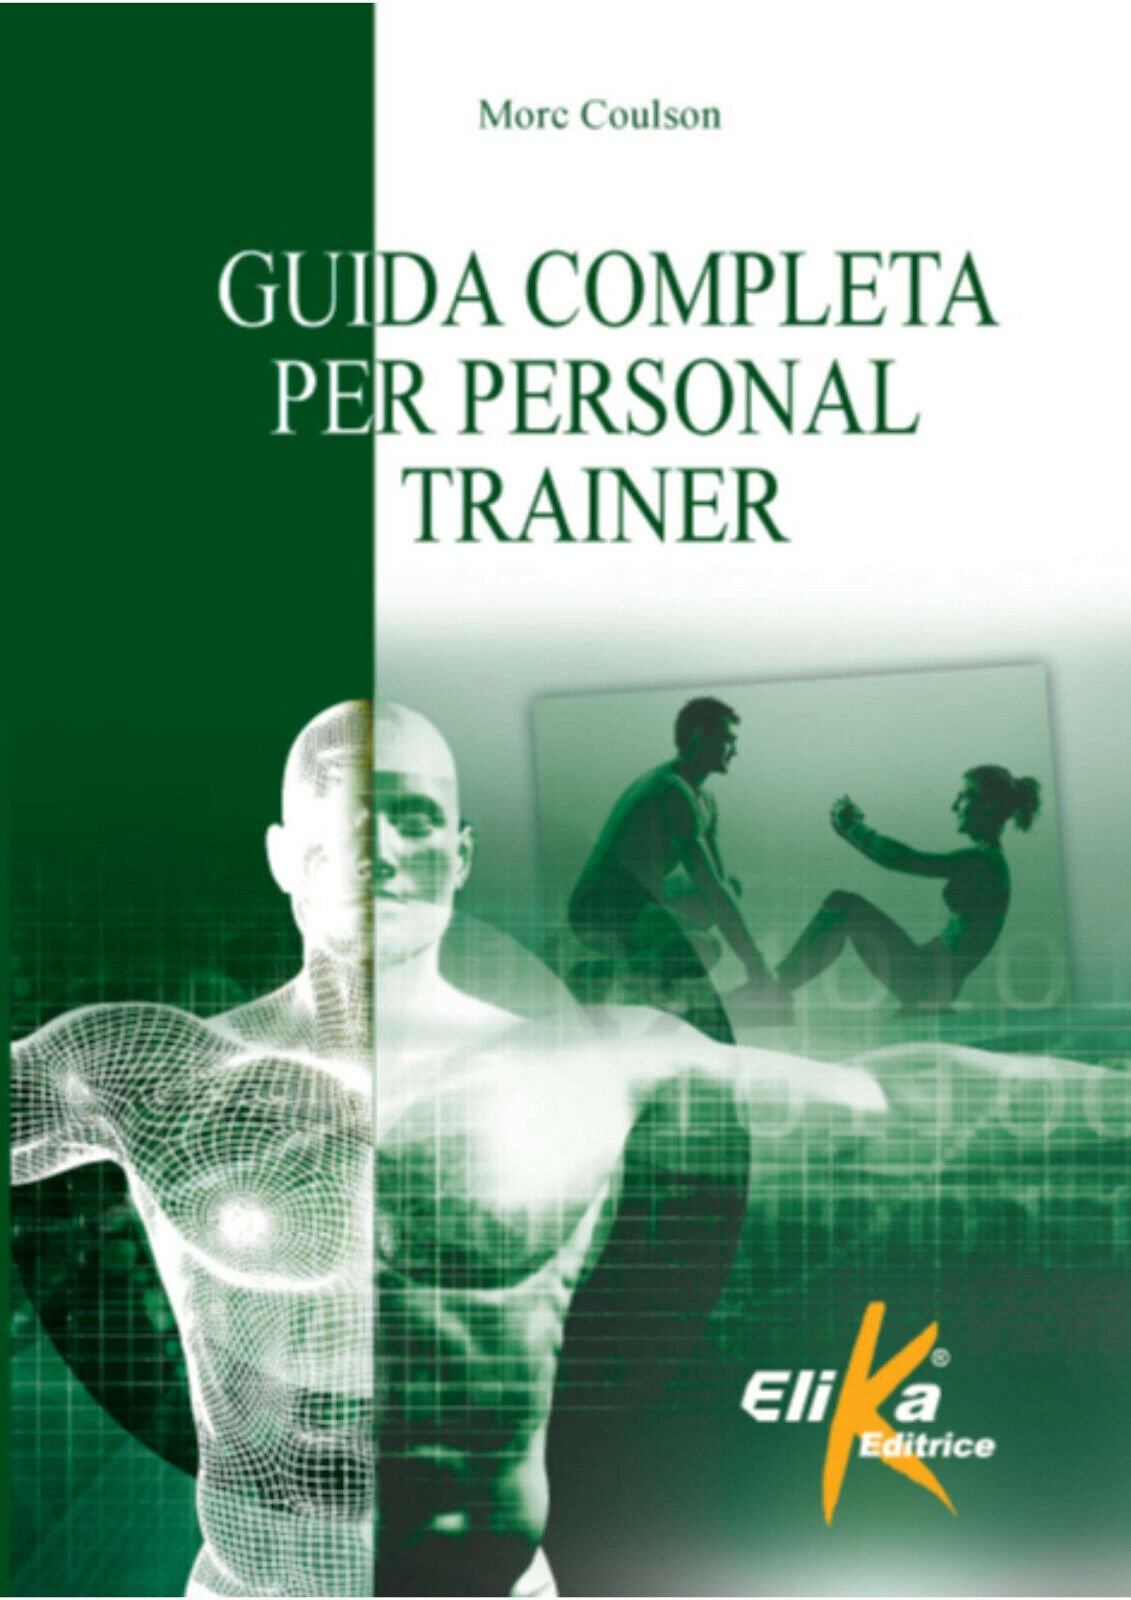 Guida completa per personal trainer - Morc Coulson - Elika, 2019 libro usato